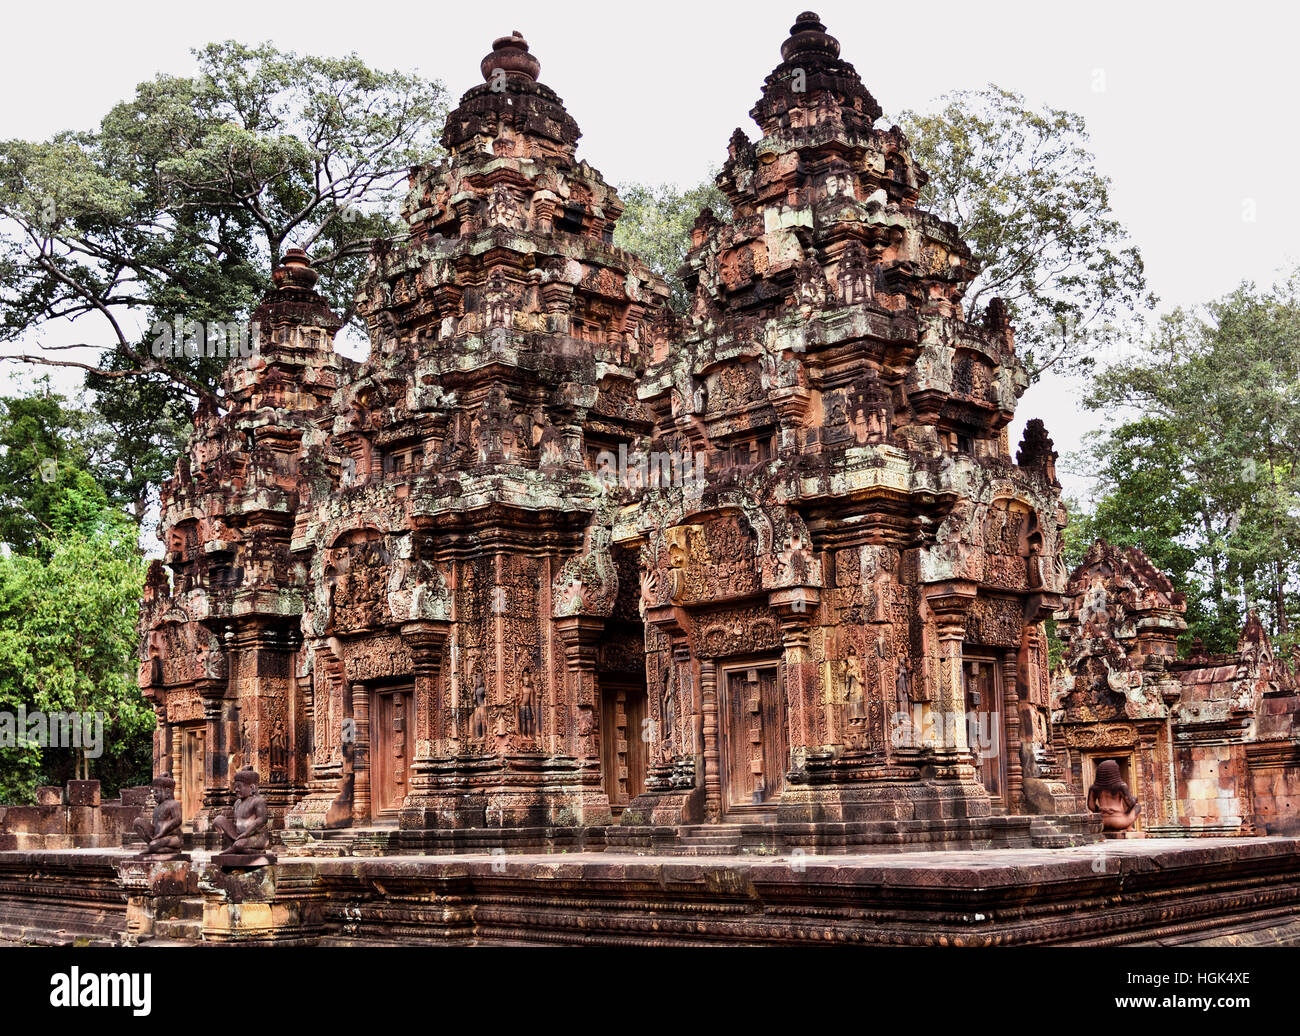 Banteay Srei temple cambodgien Srey - 10ème siècle temple hindou dédié à Shiva. Siem Reap, Cambodge Angkor ( différentes capitales complexe archéologique empire Khmer 9-15ème siècle ) Banque D'Images